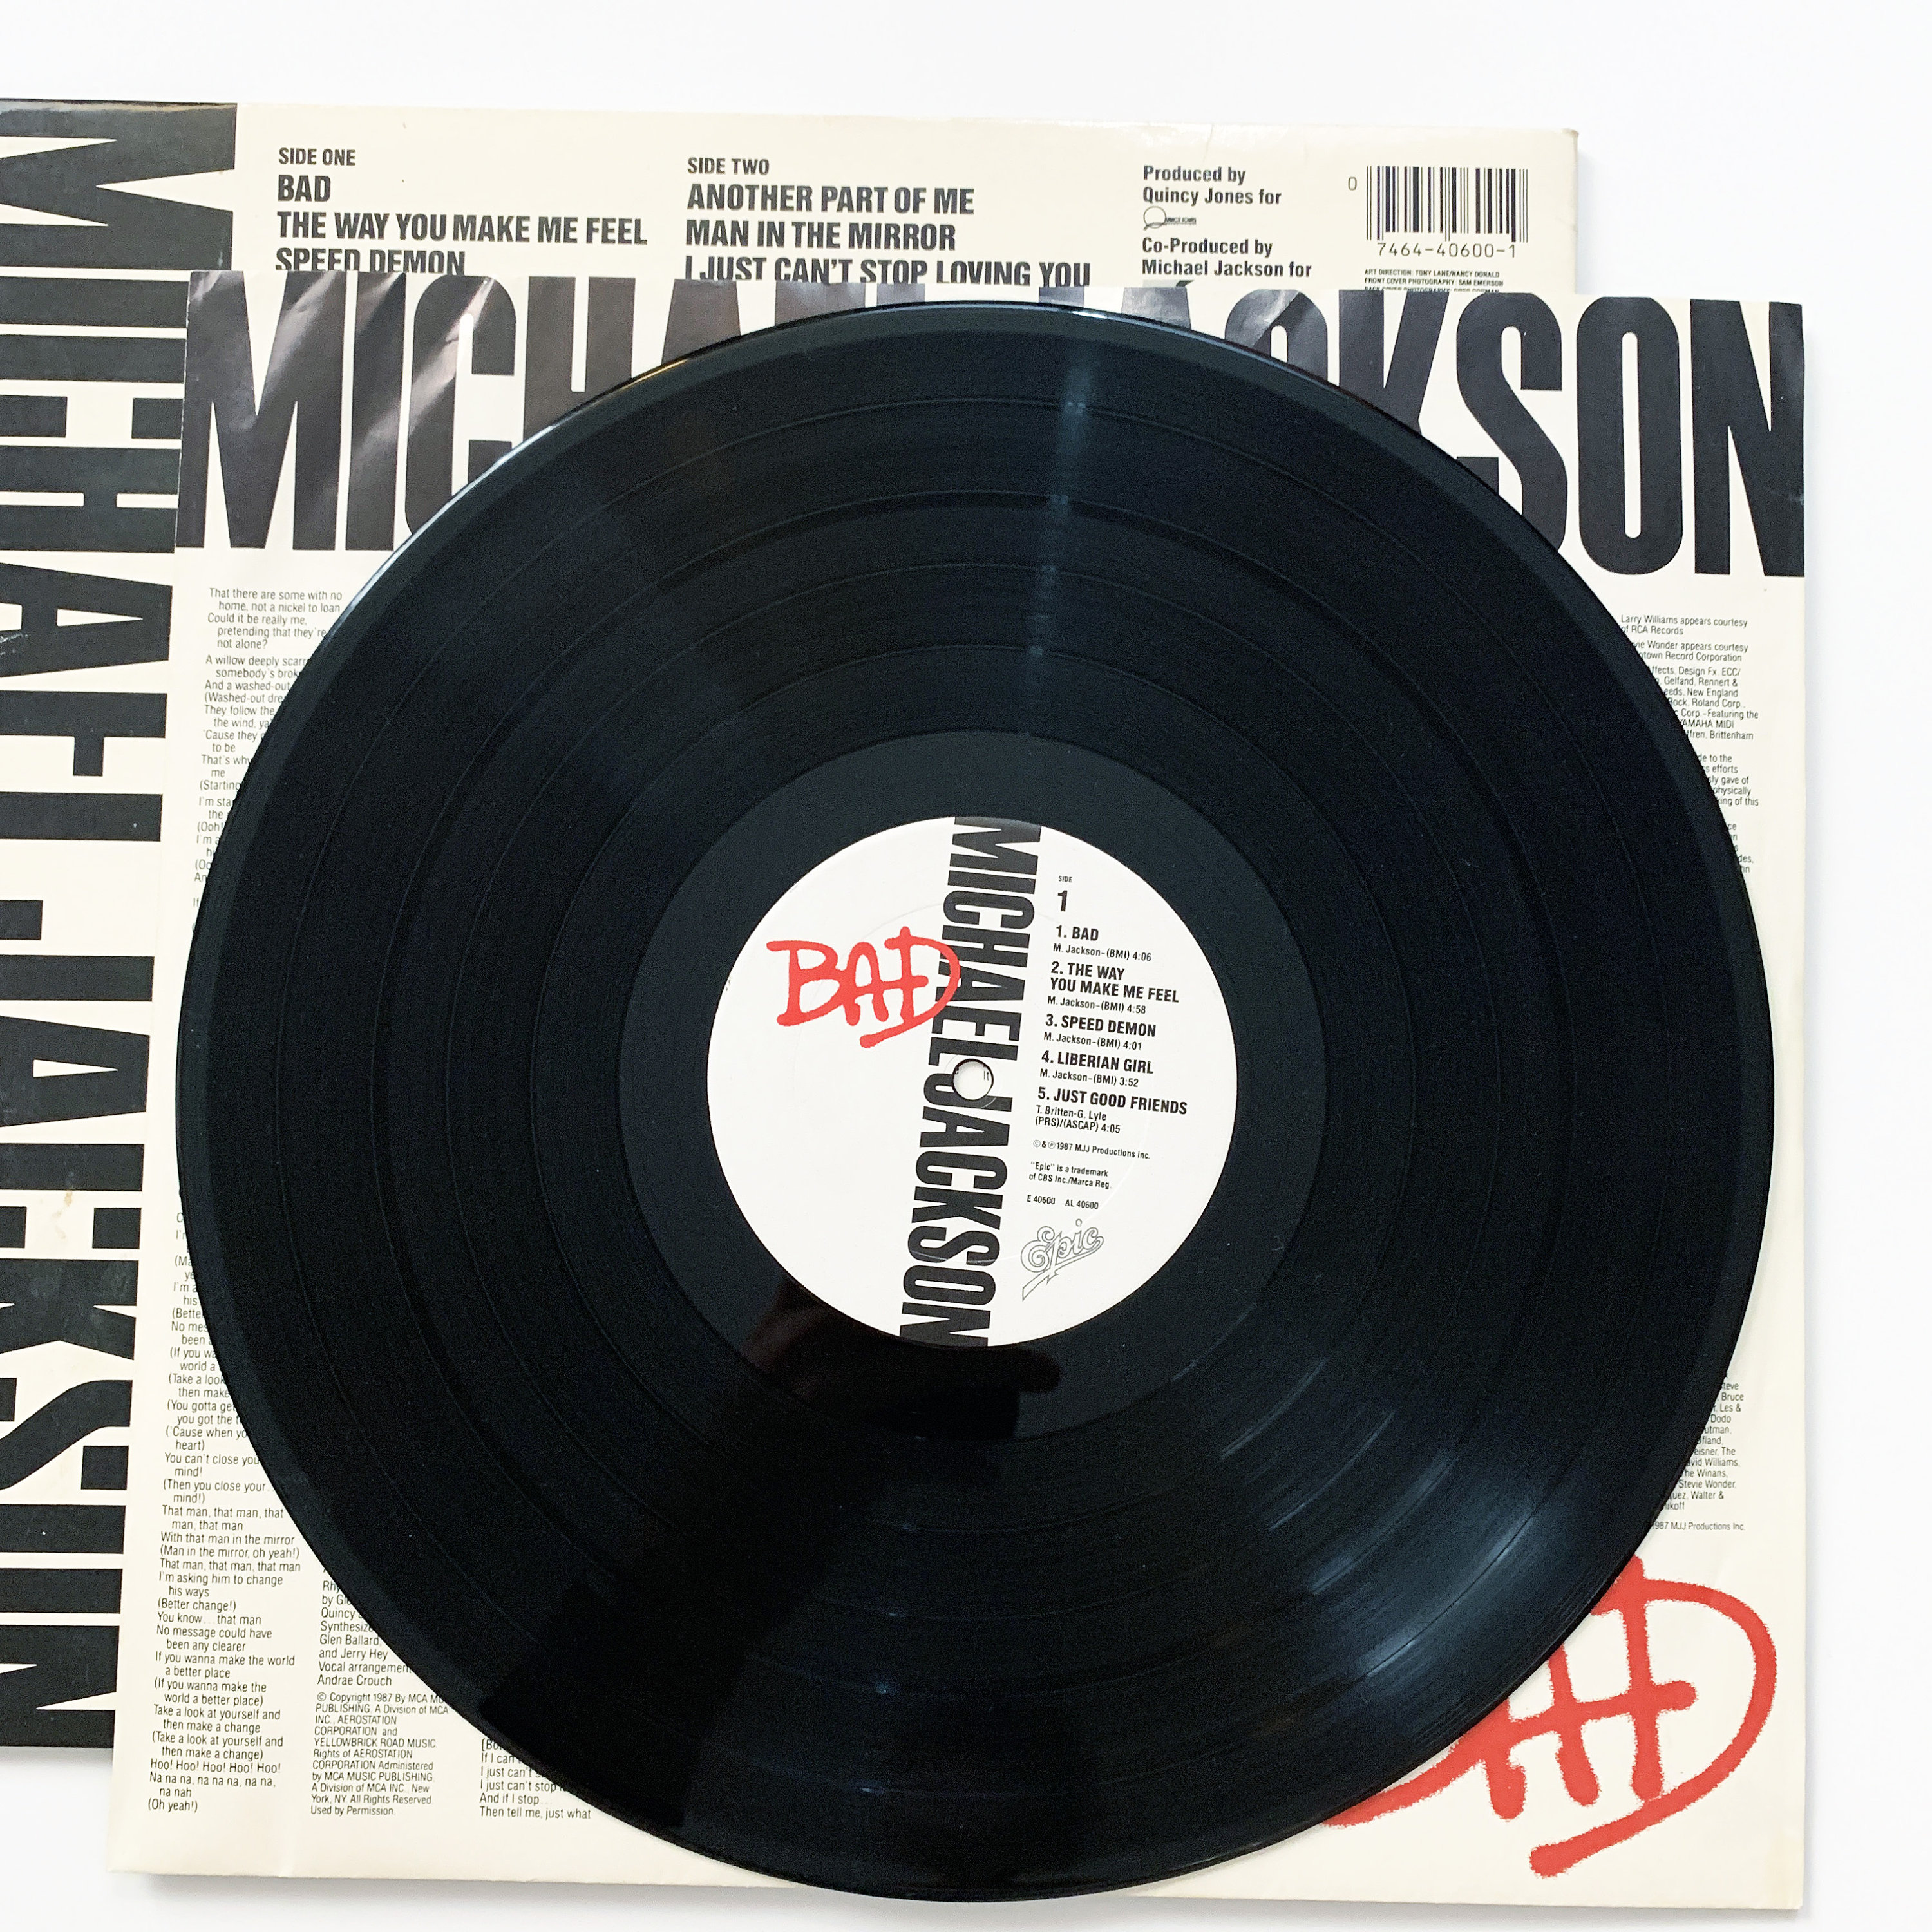 Vinyl Michael Jackson, The King of Pop album 3 LP BAD Tour Limited